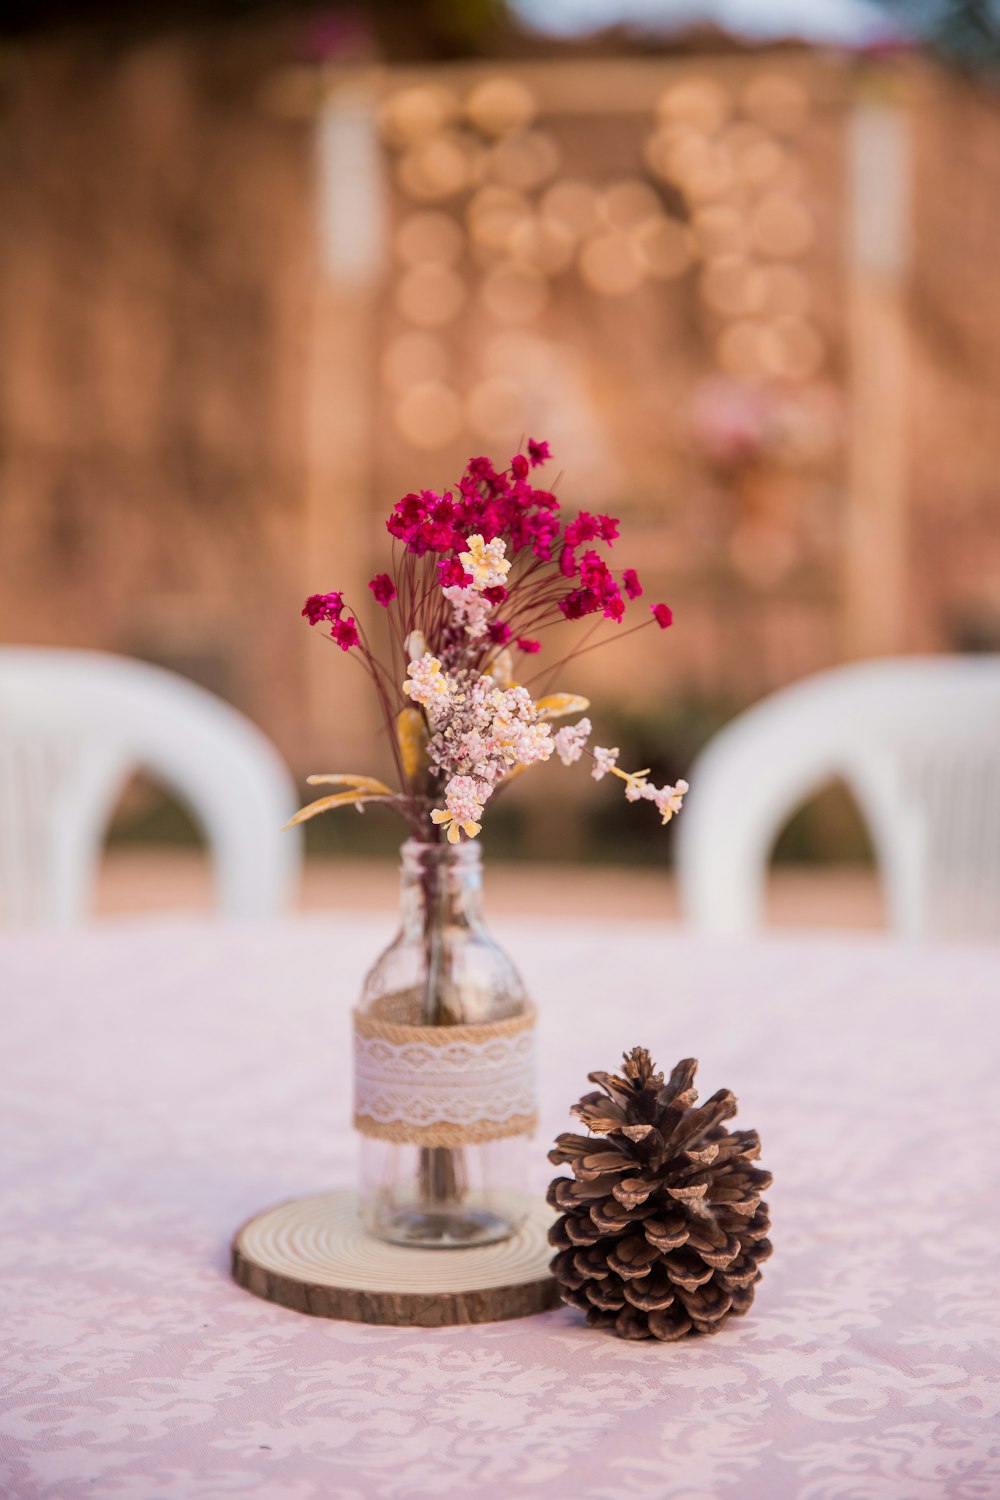 흰색 테이블에 투명 유리 꽃병에 분홍색과 흰색 꽃